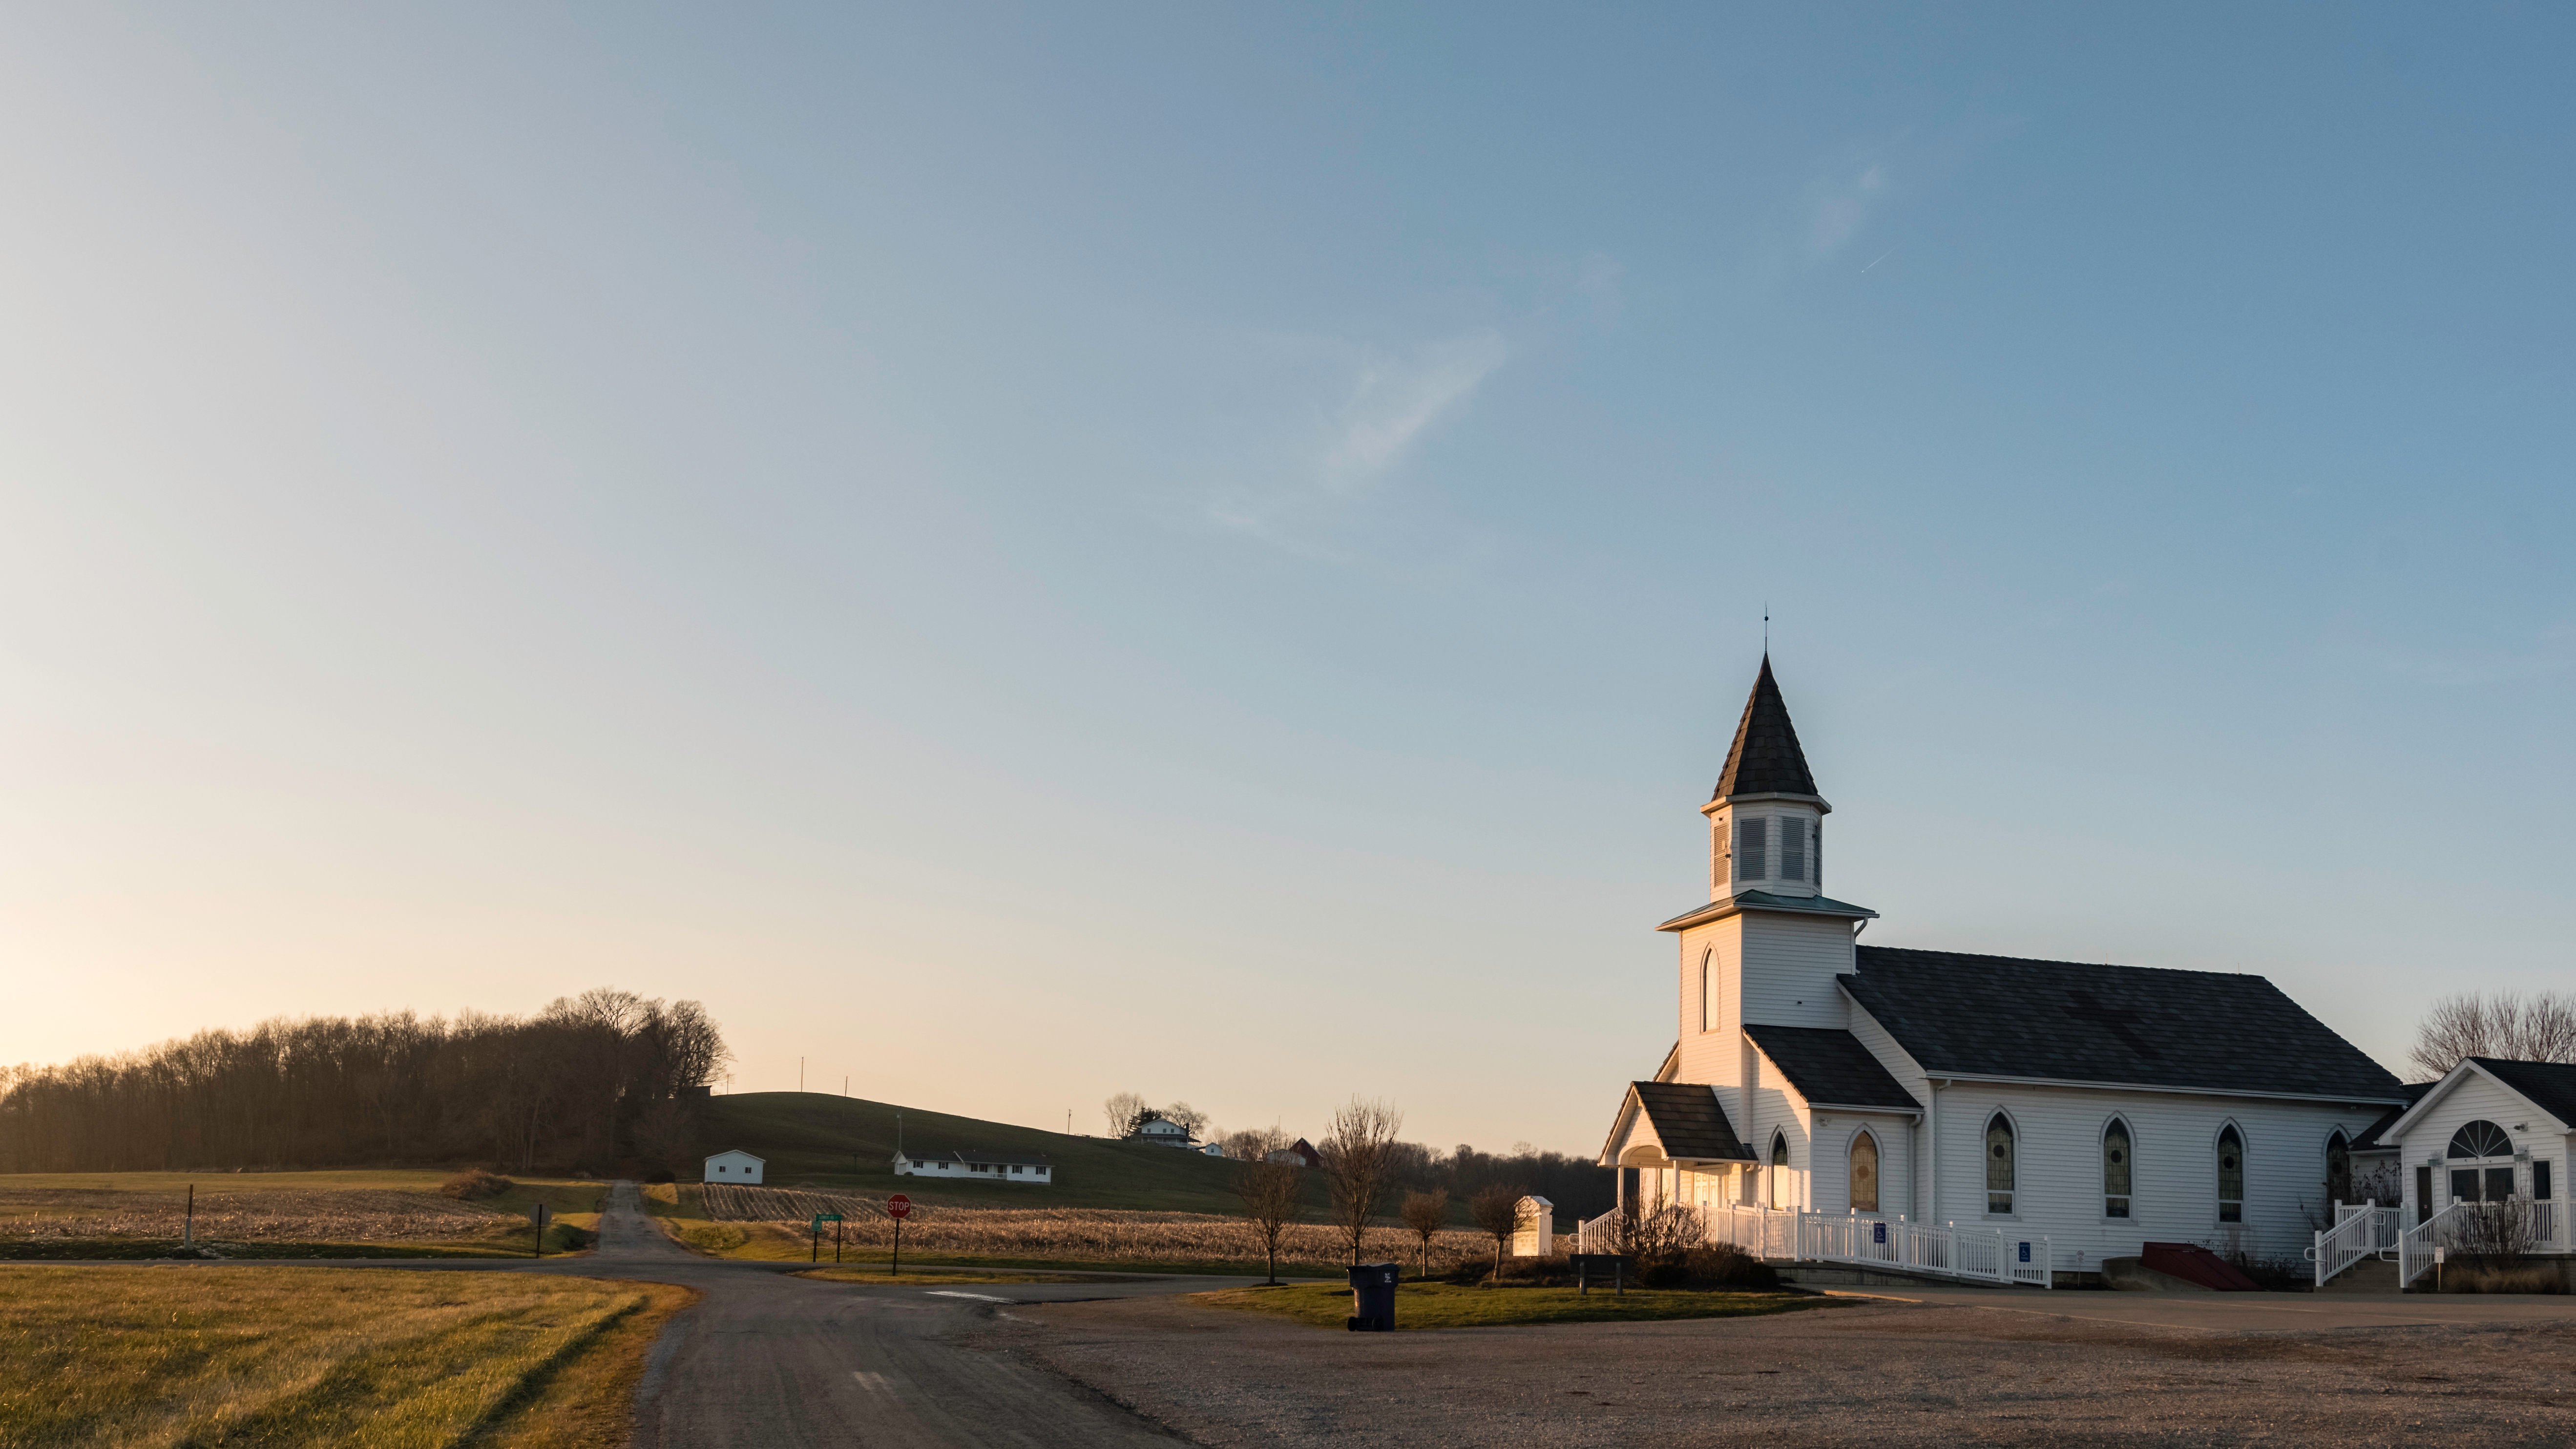 Iglesia Metodista Unida Hopewell en el condado rural de Perry fotografiada el 5 de enero de 2019 en Glenford, Ohio. | Foto: Shutterstock